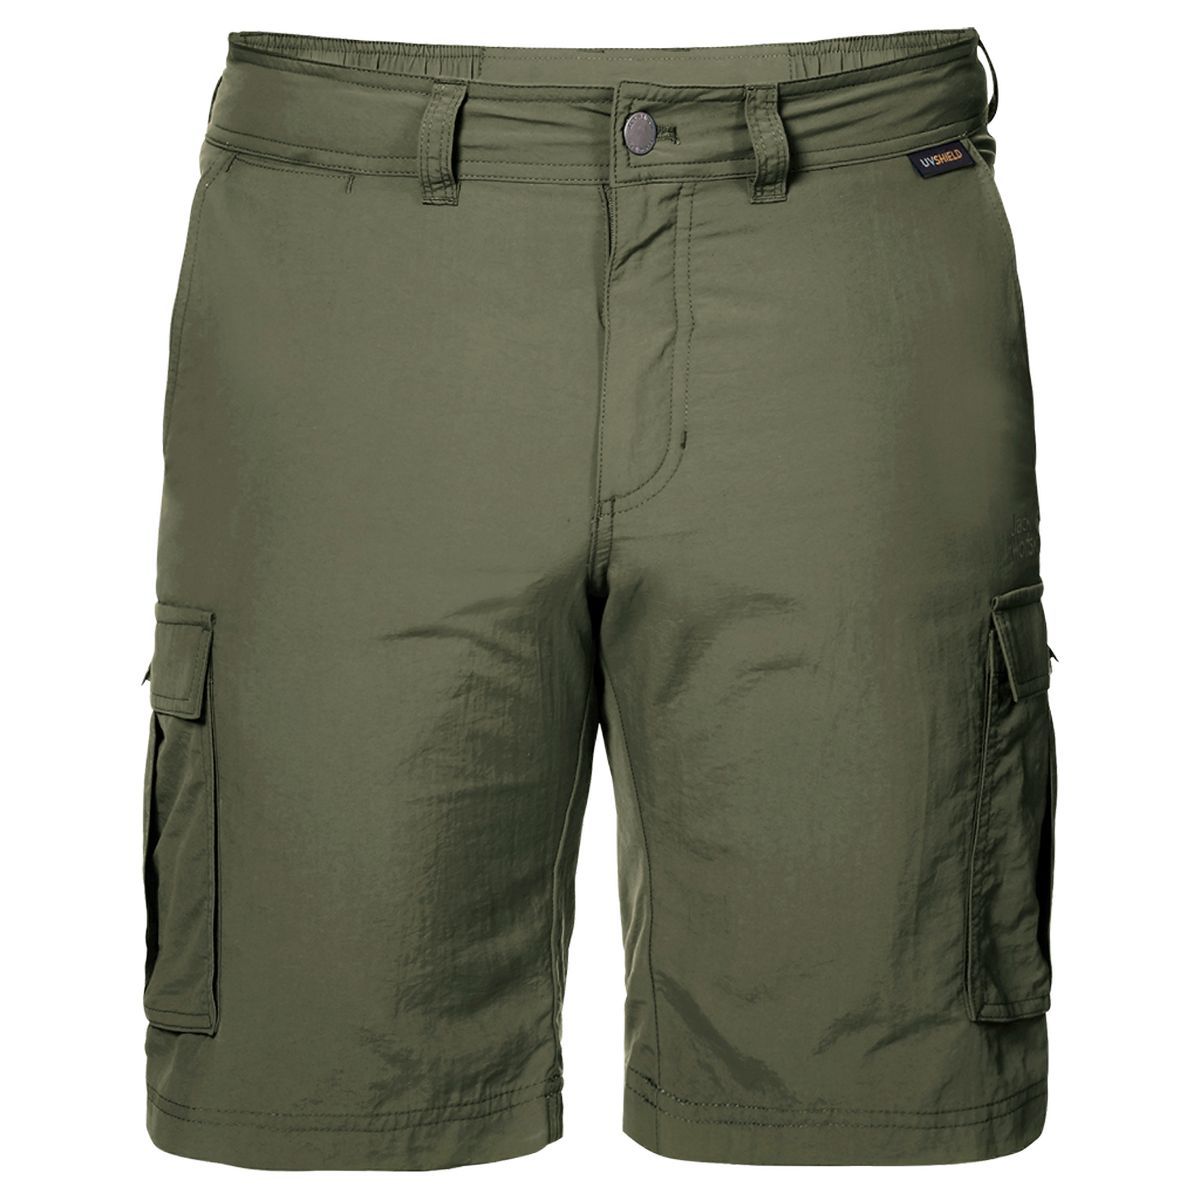   Jack Wolfskin Canyon Cargo Shorts, : . 1504201-5052.  52